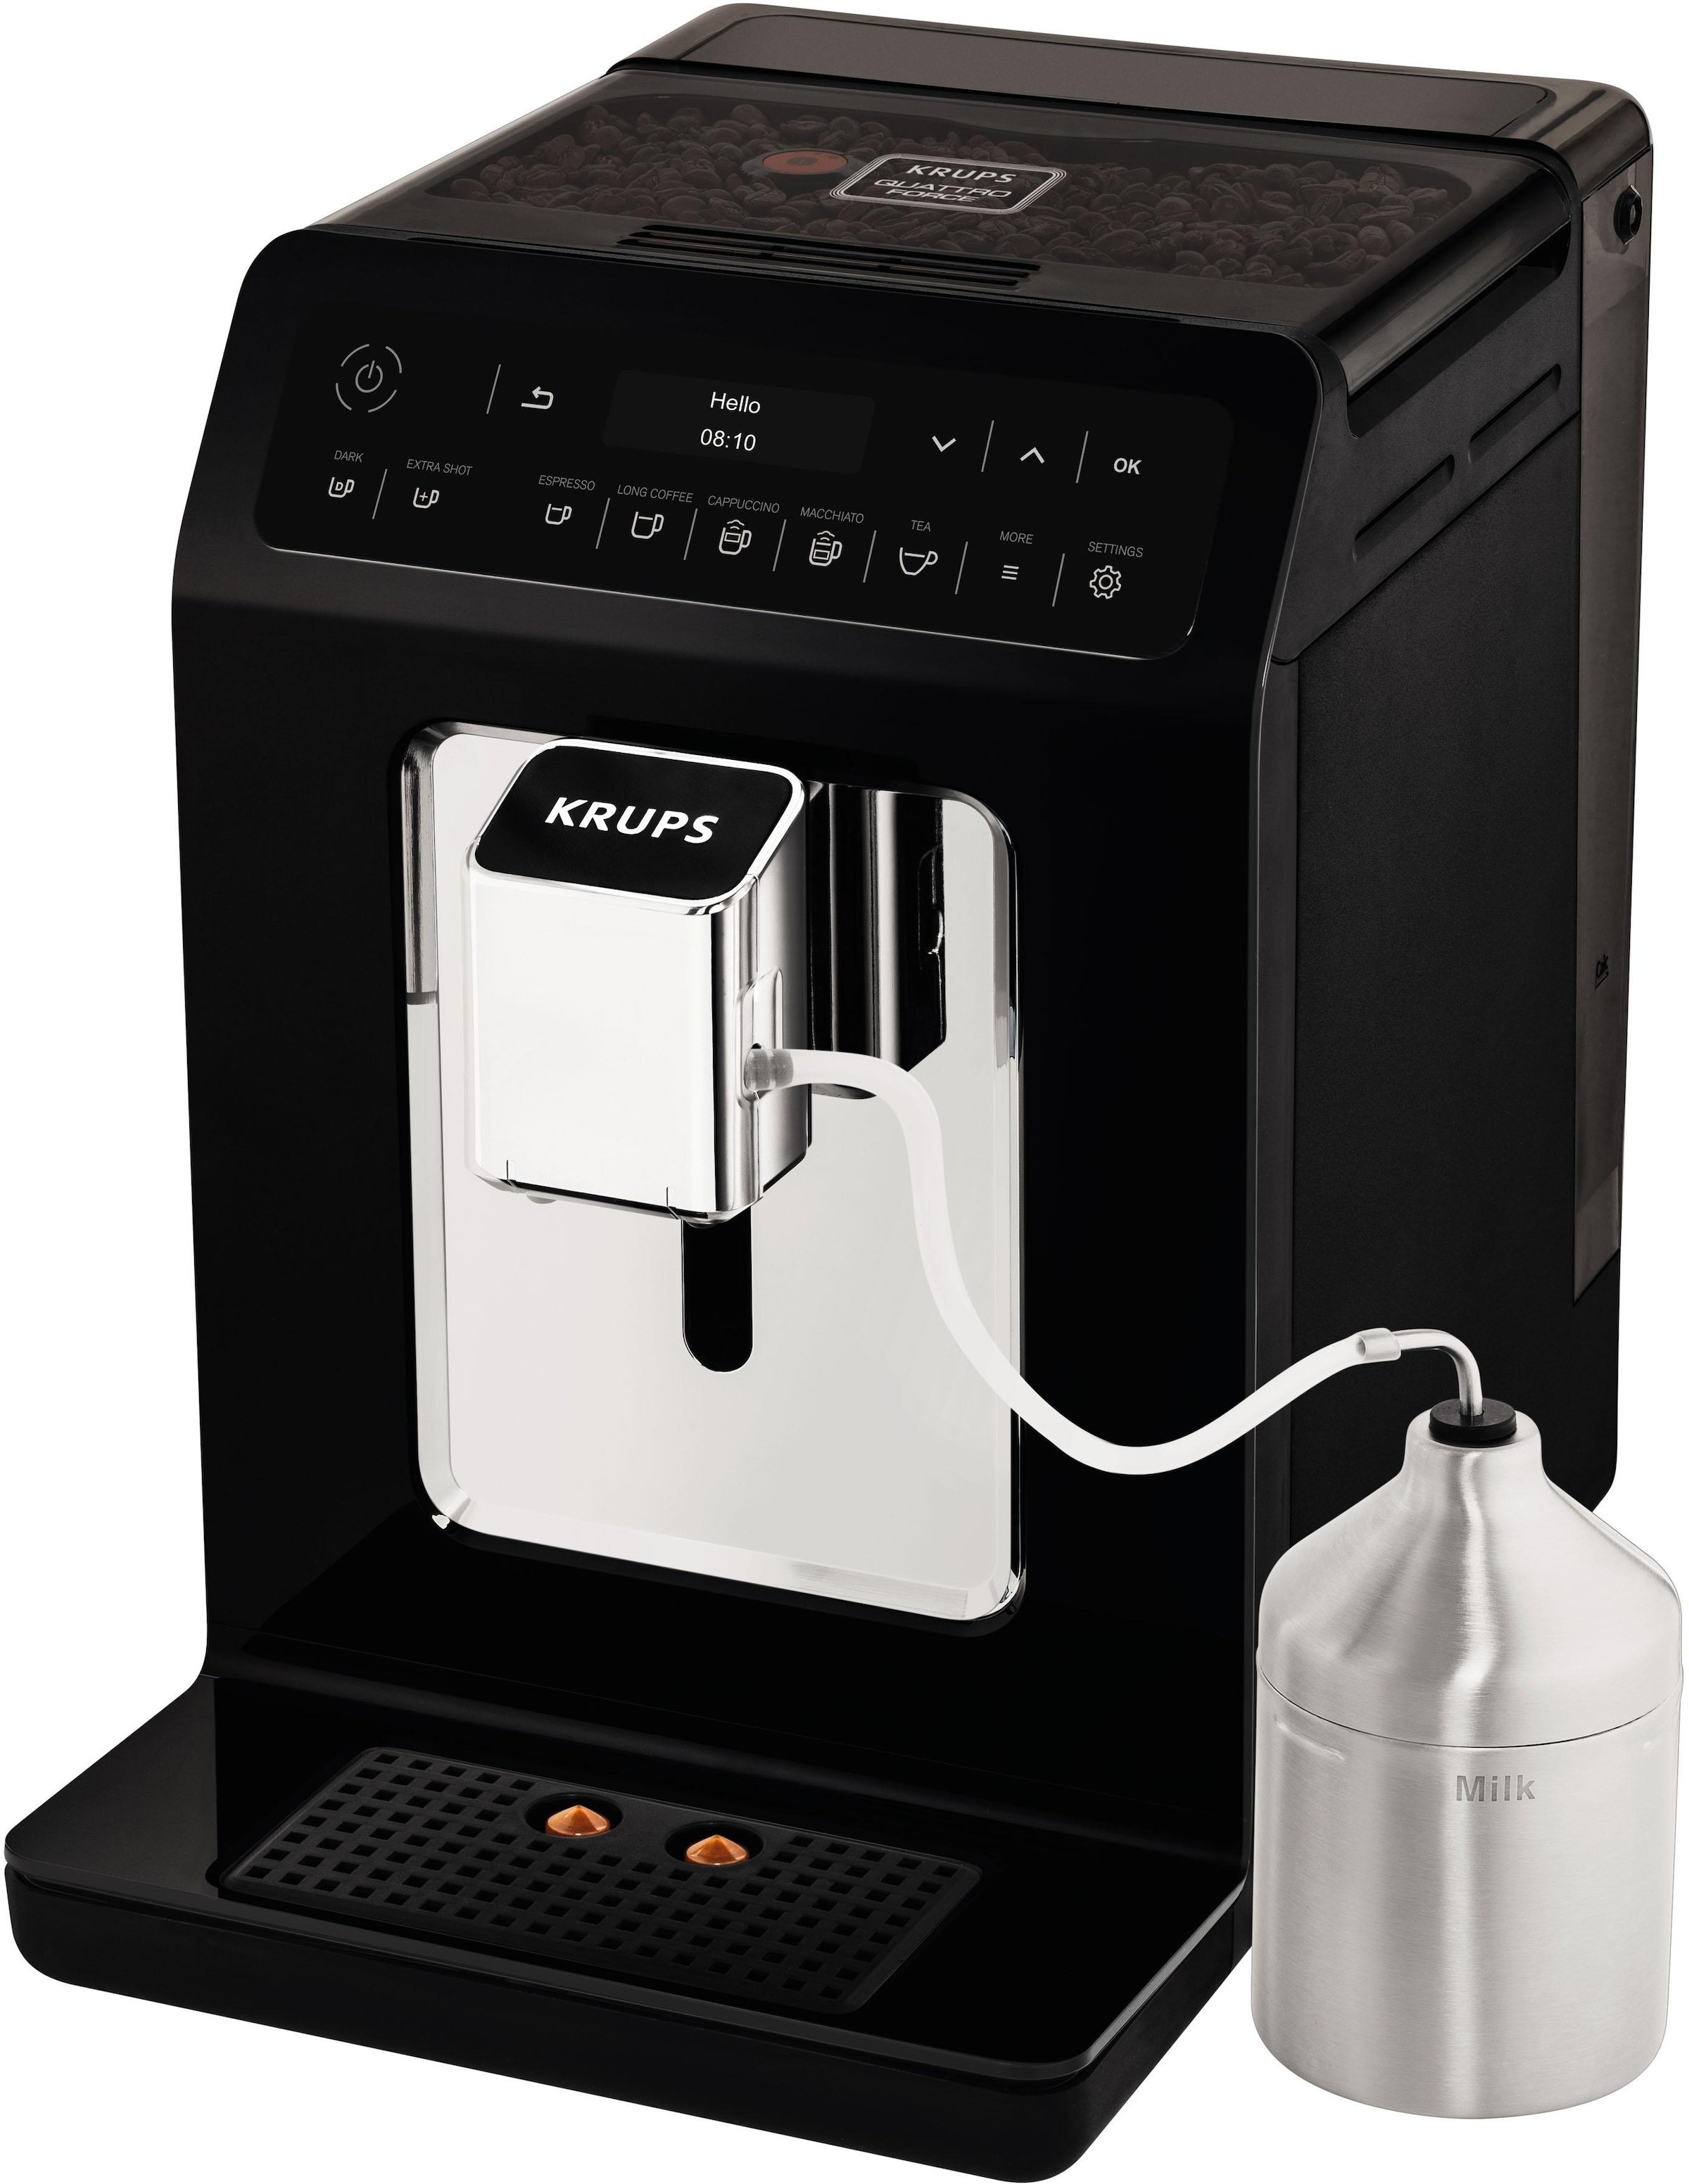 Krups Kaffeevollautomat »EA8918 Evidence«, OLED-Display, 12 Kaffee- und3 Tee-Variationen, 2-Tassen Funktion